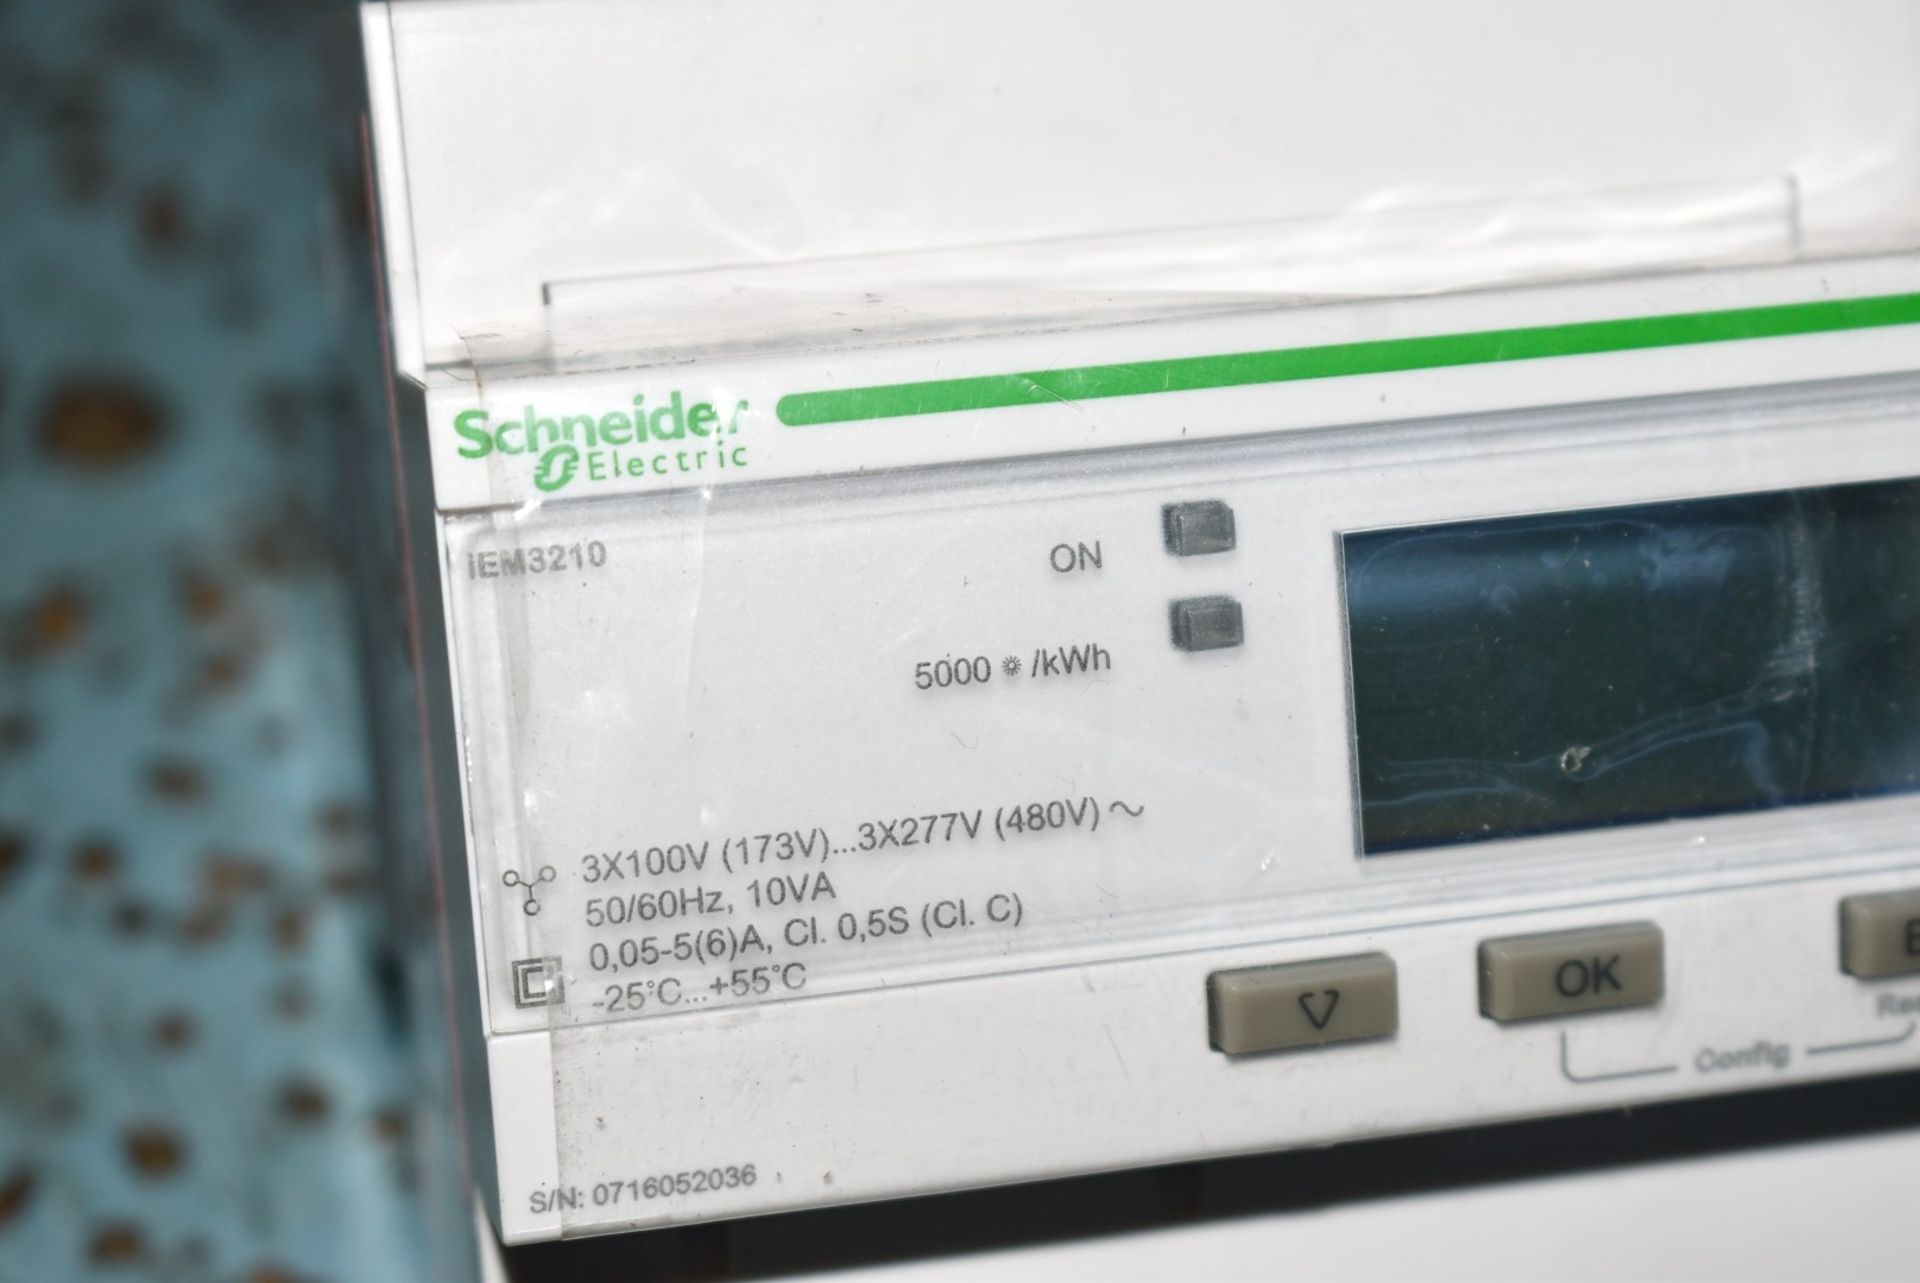 1 x Schneider IEM3210 Power Meter Reader - Unboxed - Image 3 of 4